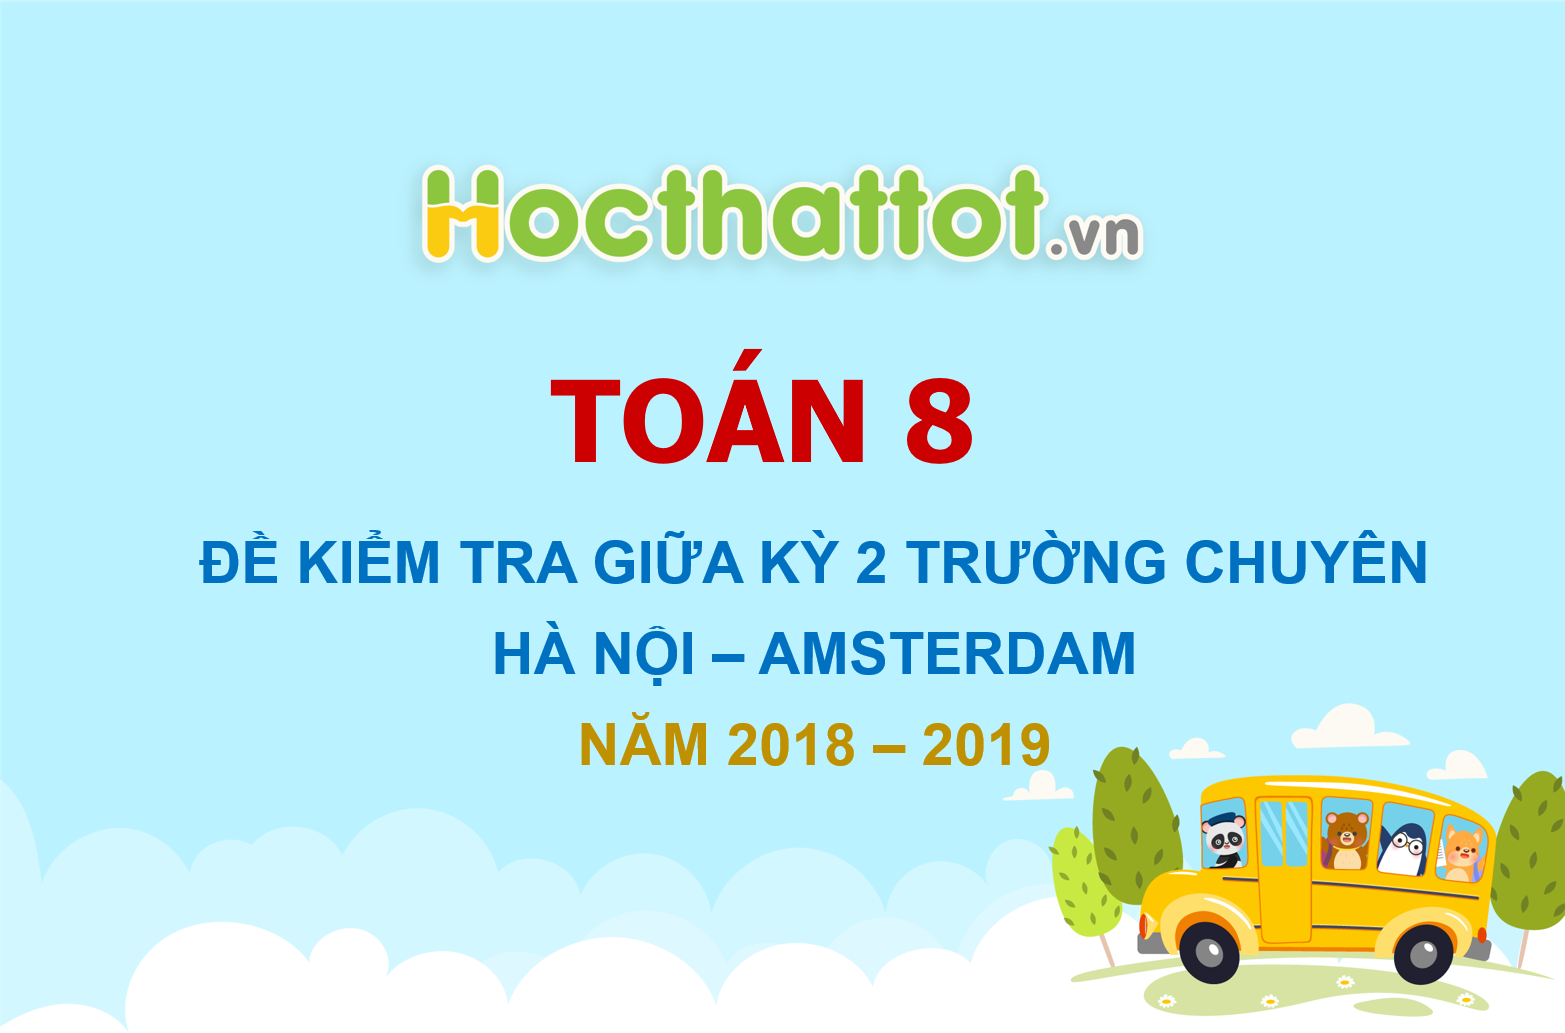 de-kiem-tra-giua-ky-2-toan-8-nam-2018-2019-truong-chuyen-ha-noi-amsterdam